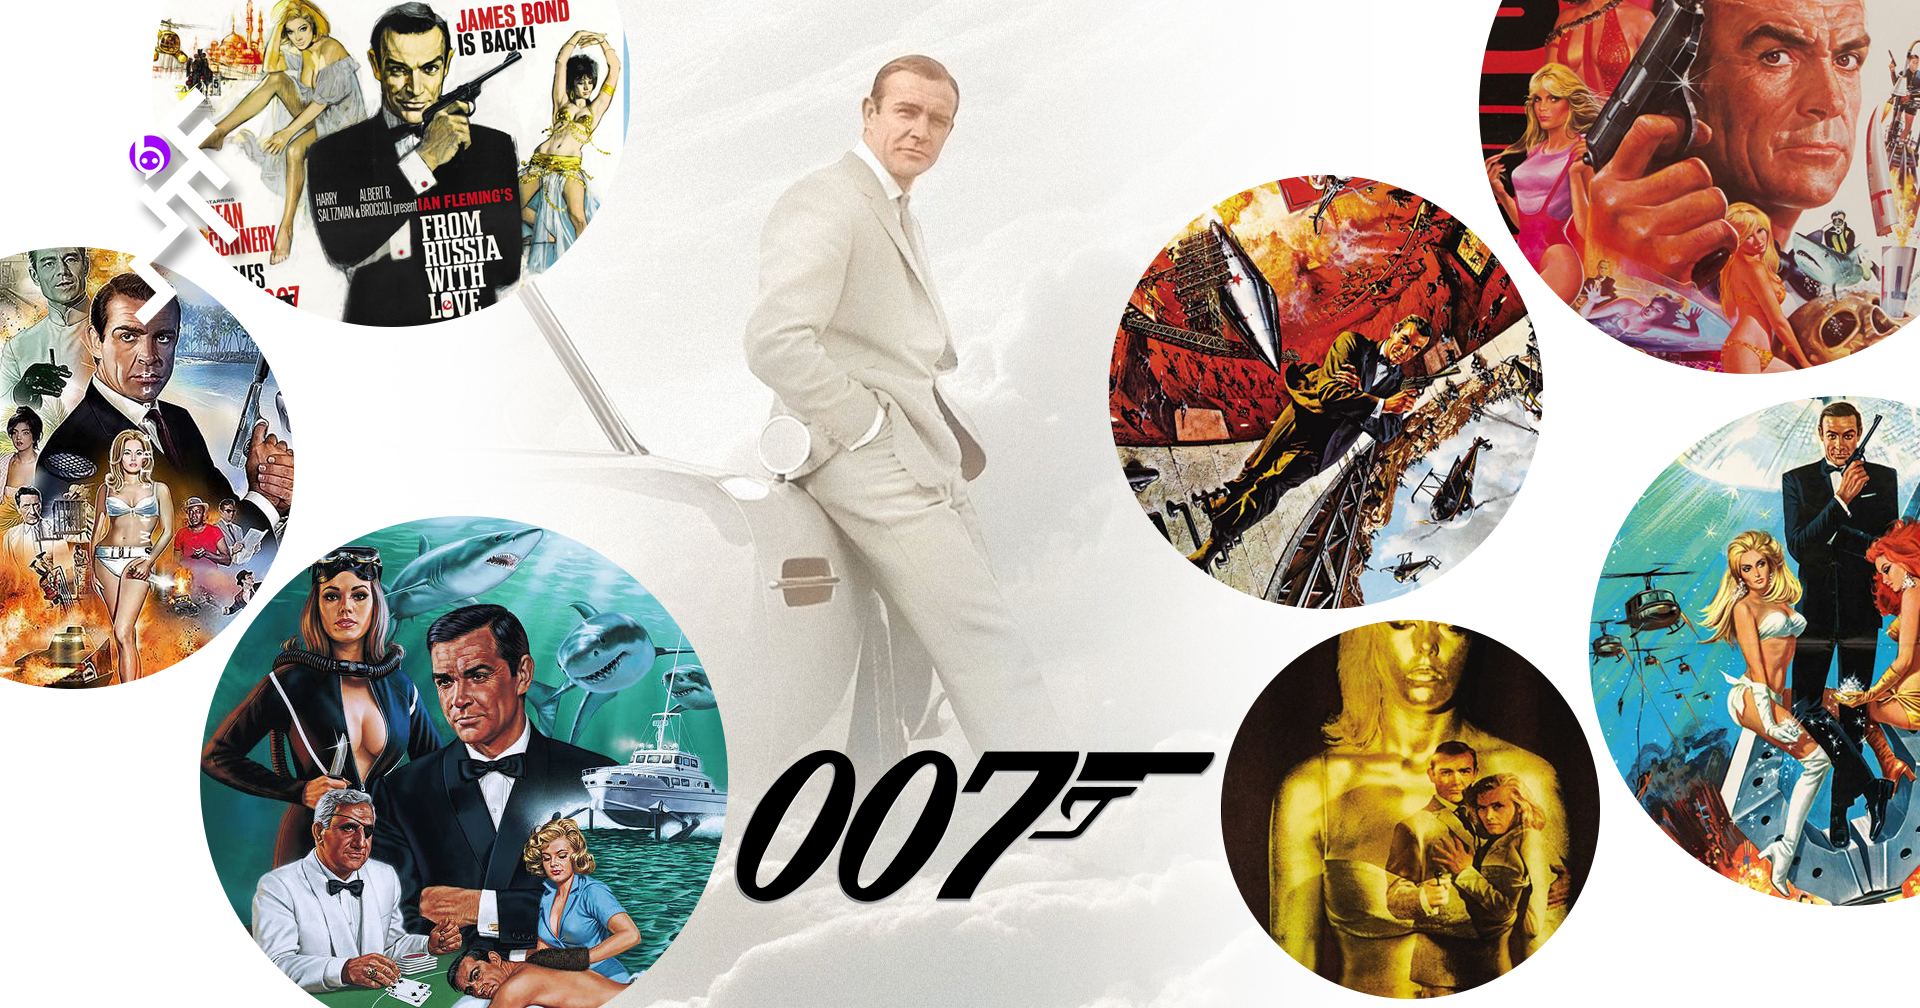 James Bond 7 ตอนแรกเริ่มของ Sean Connery ผู้บุกเบิก “สายลับพยัคฆ์ร้าย” ให้กลายเป็นตำนาน